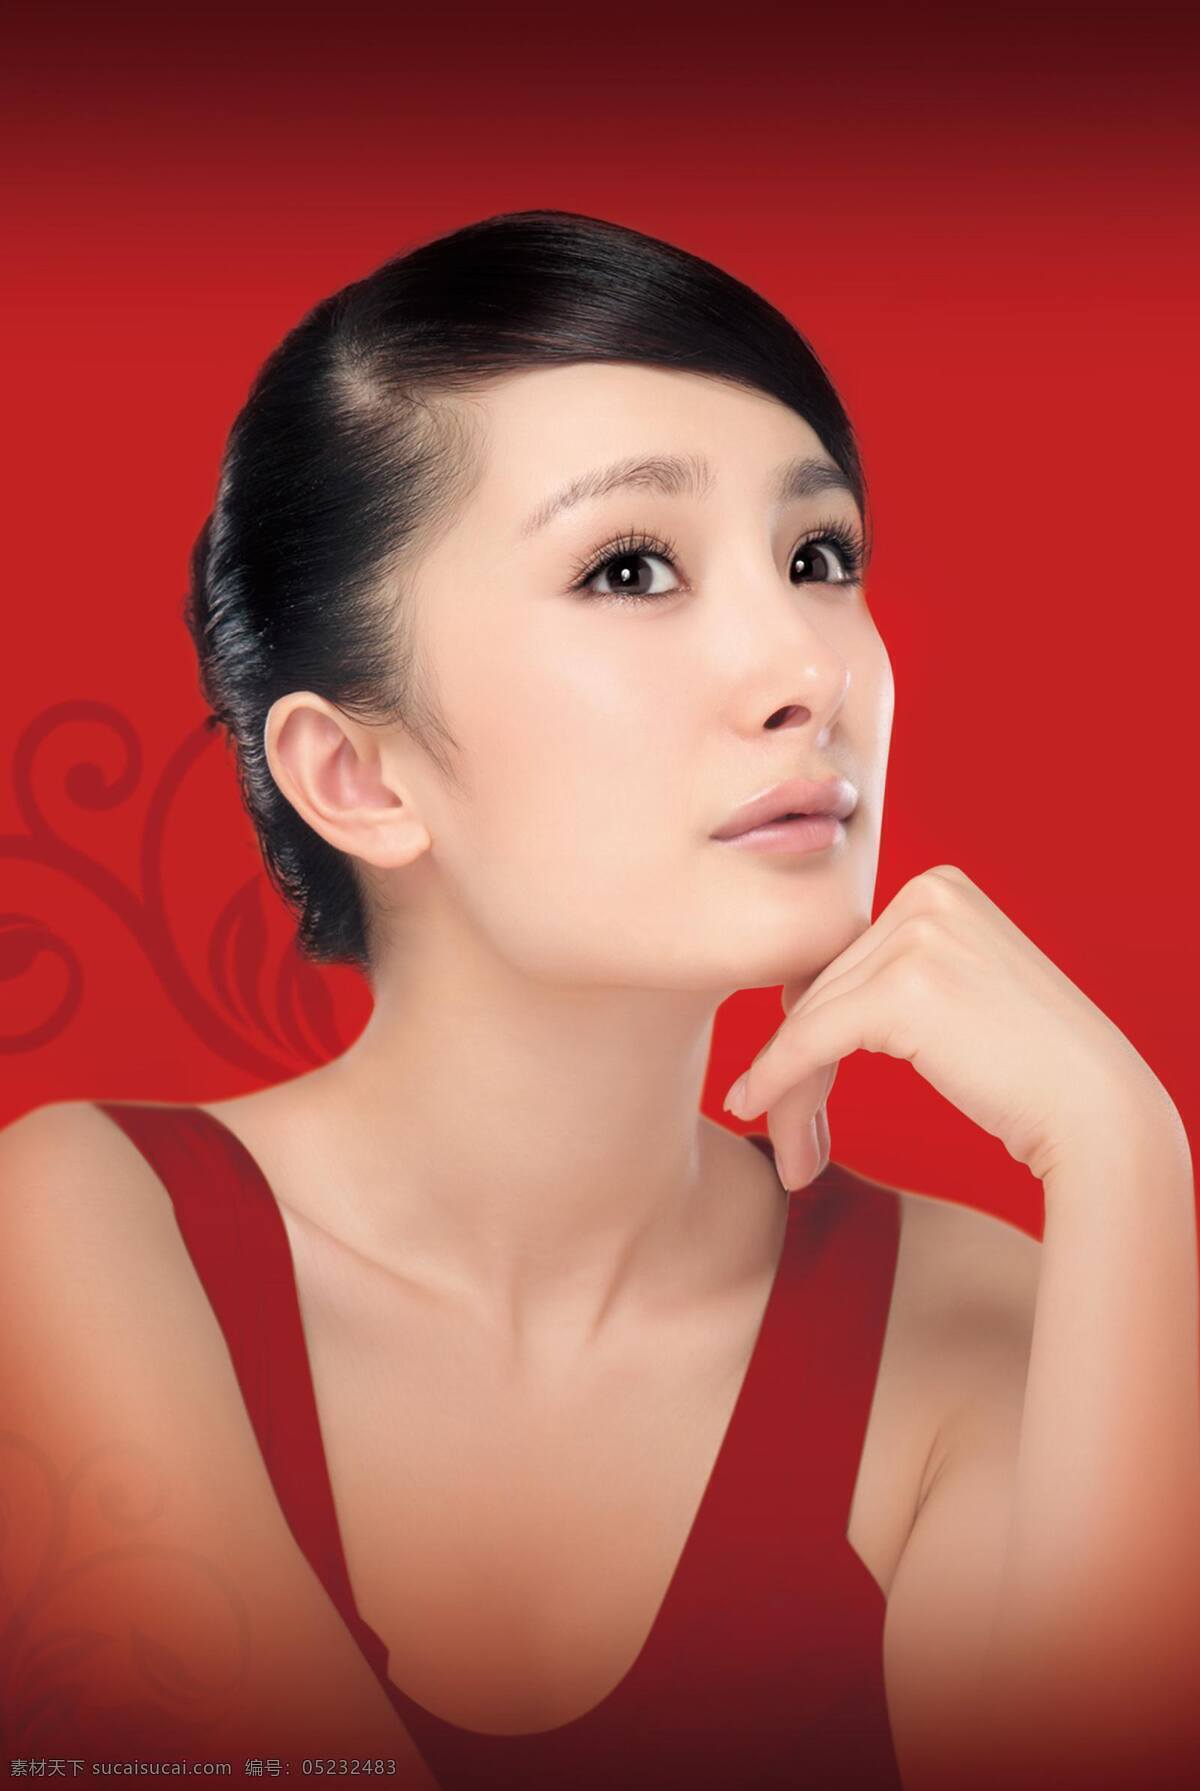 杨幂 美女 美容 形象代言 模物 明星 偶像 化妆品 服装 明星偶像 人物图库